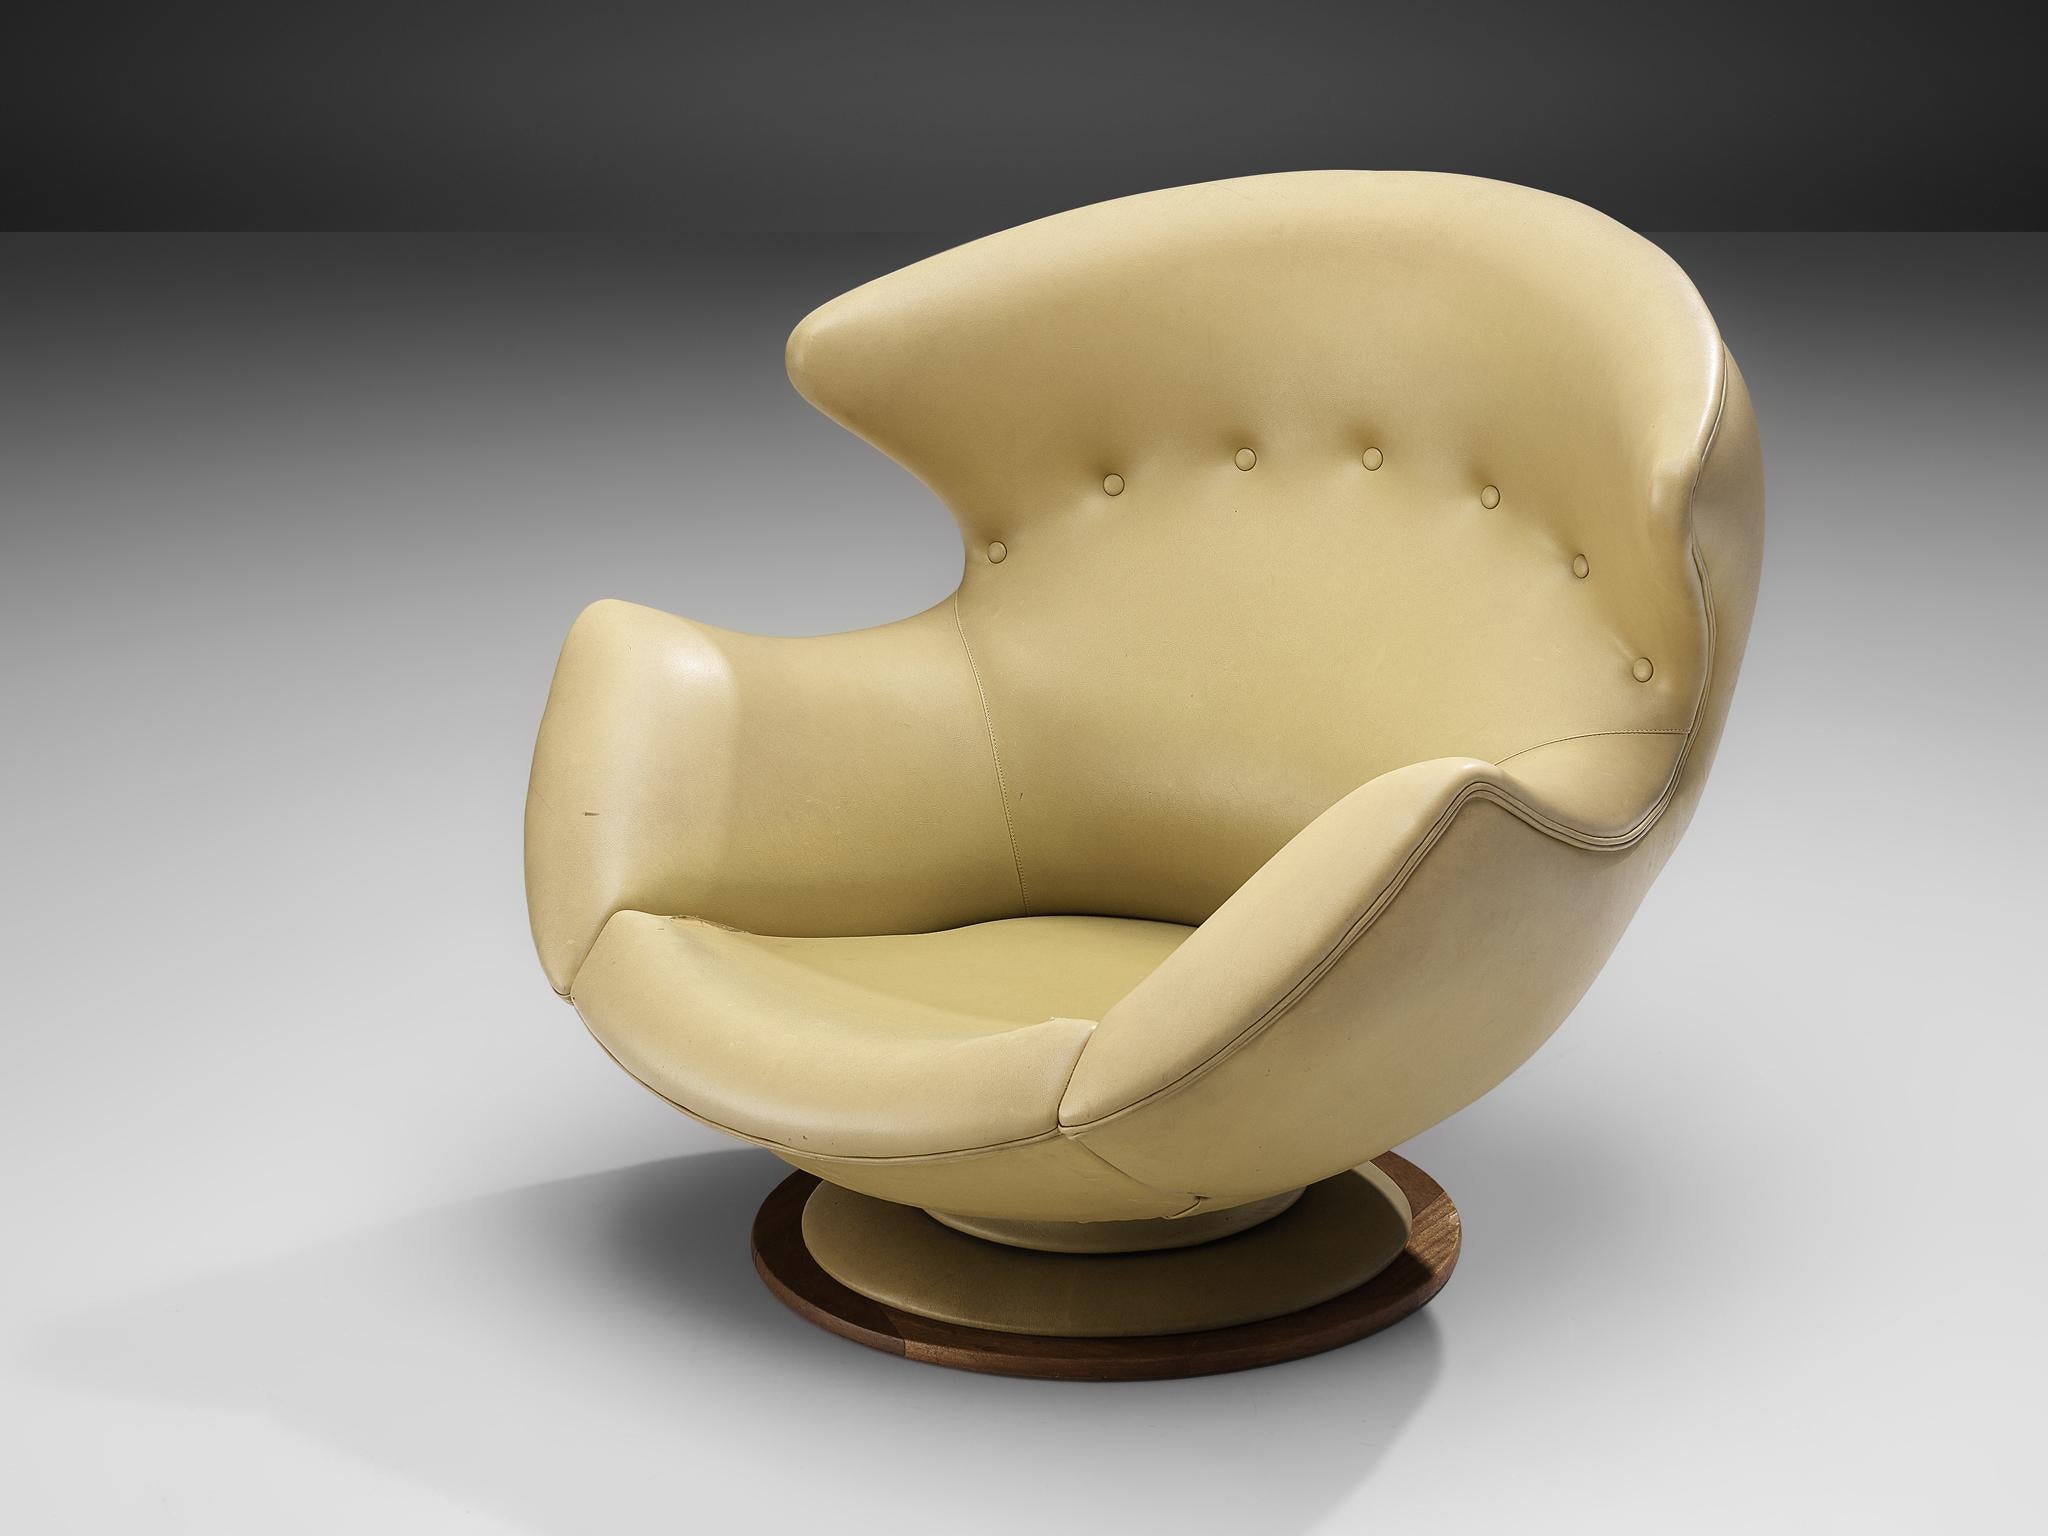 Chaise longue, similicuir, bois, Italie, années 1970

Grand et confortable fauteuil de salon à oreilles, recouvert de similicuir jaune. La forme générale arrondie du fauteuil, avec les ailes qui s'étendent vers les accoudoirs, fait en sorte que le